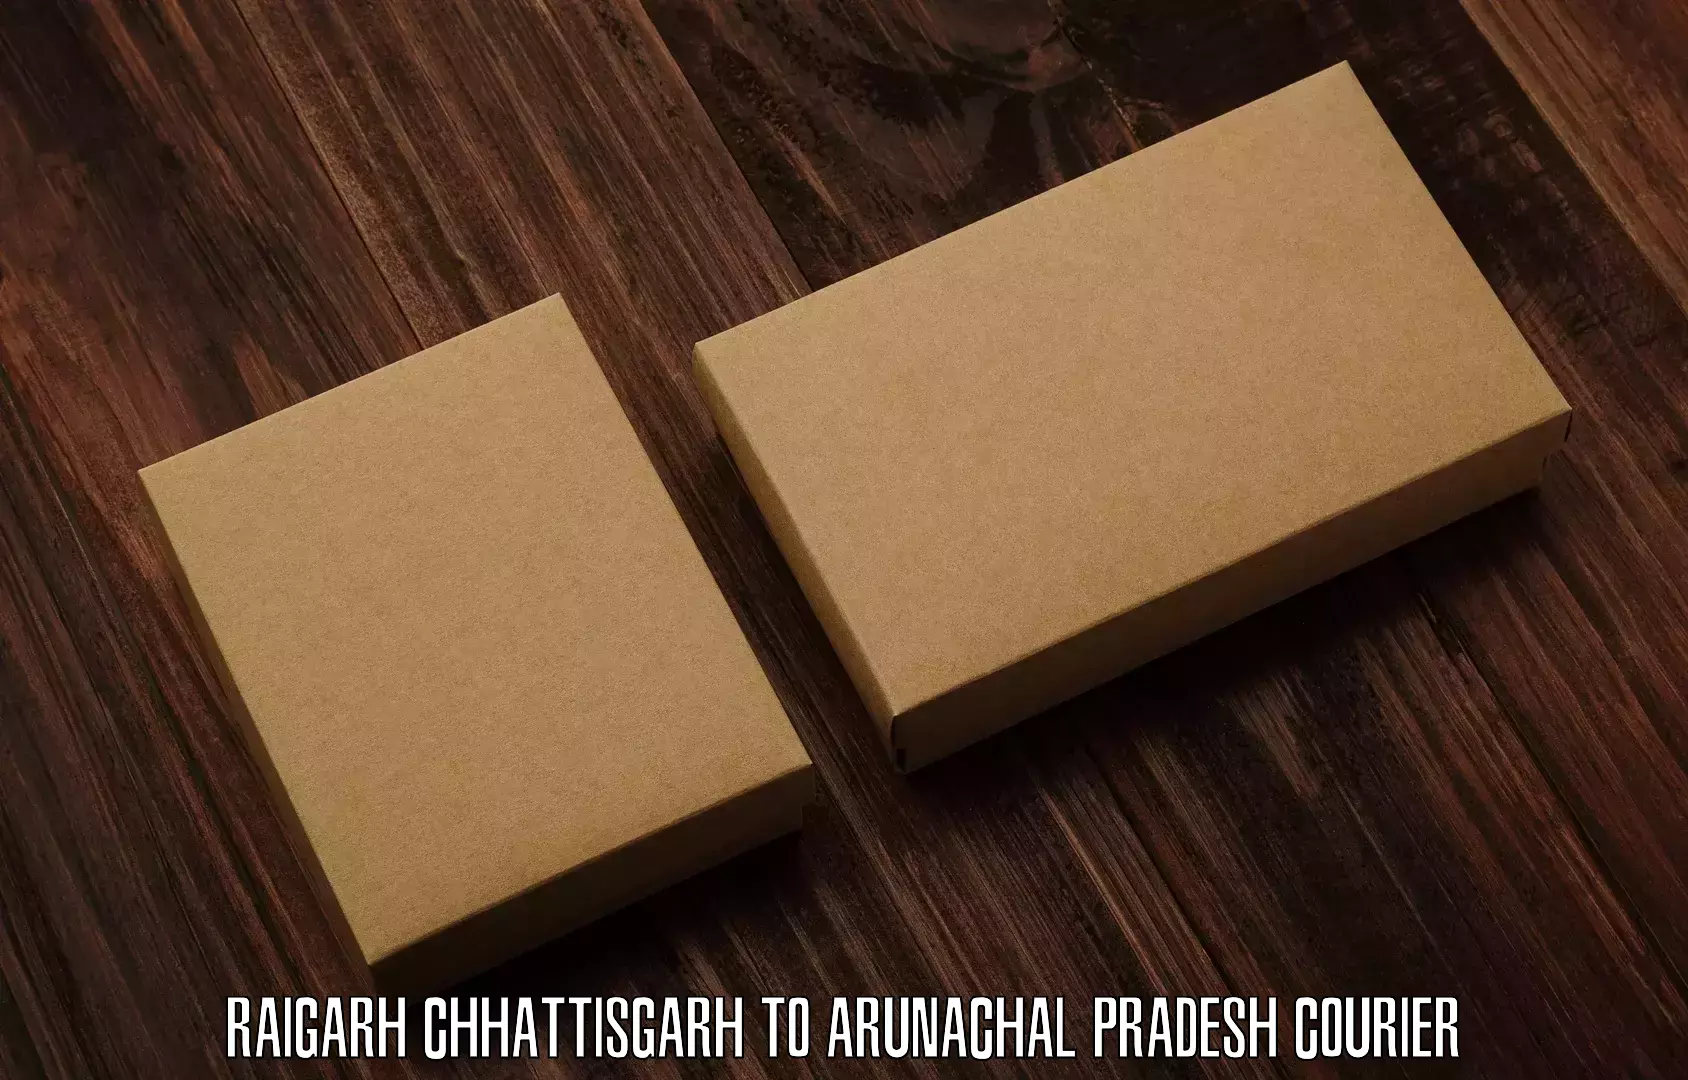 User-friendly delivery service Raigarh Chhattisgarh to Deomali